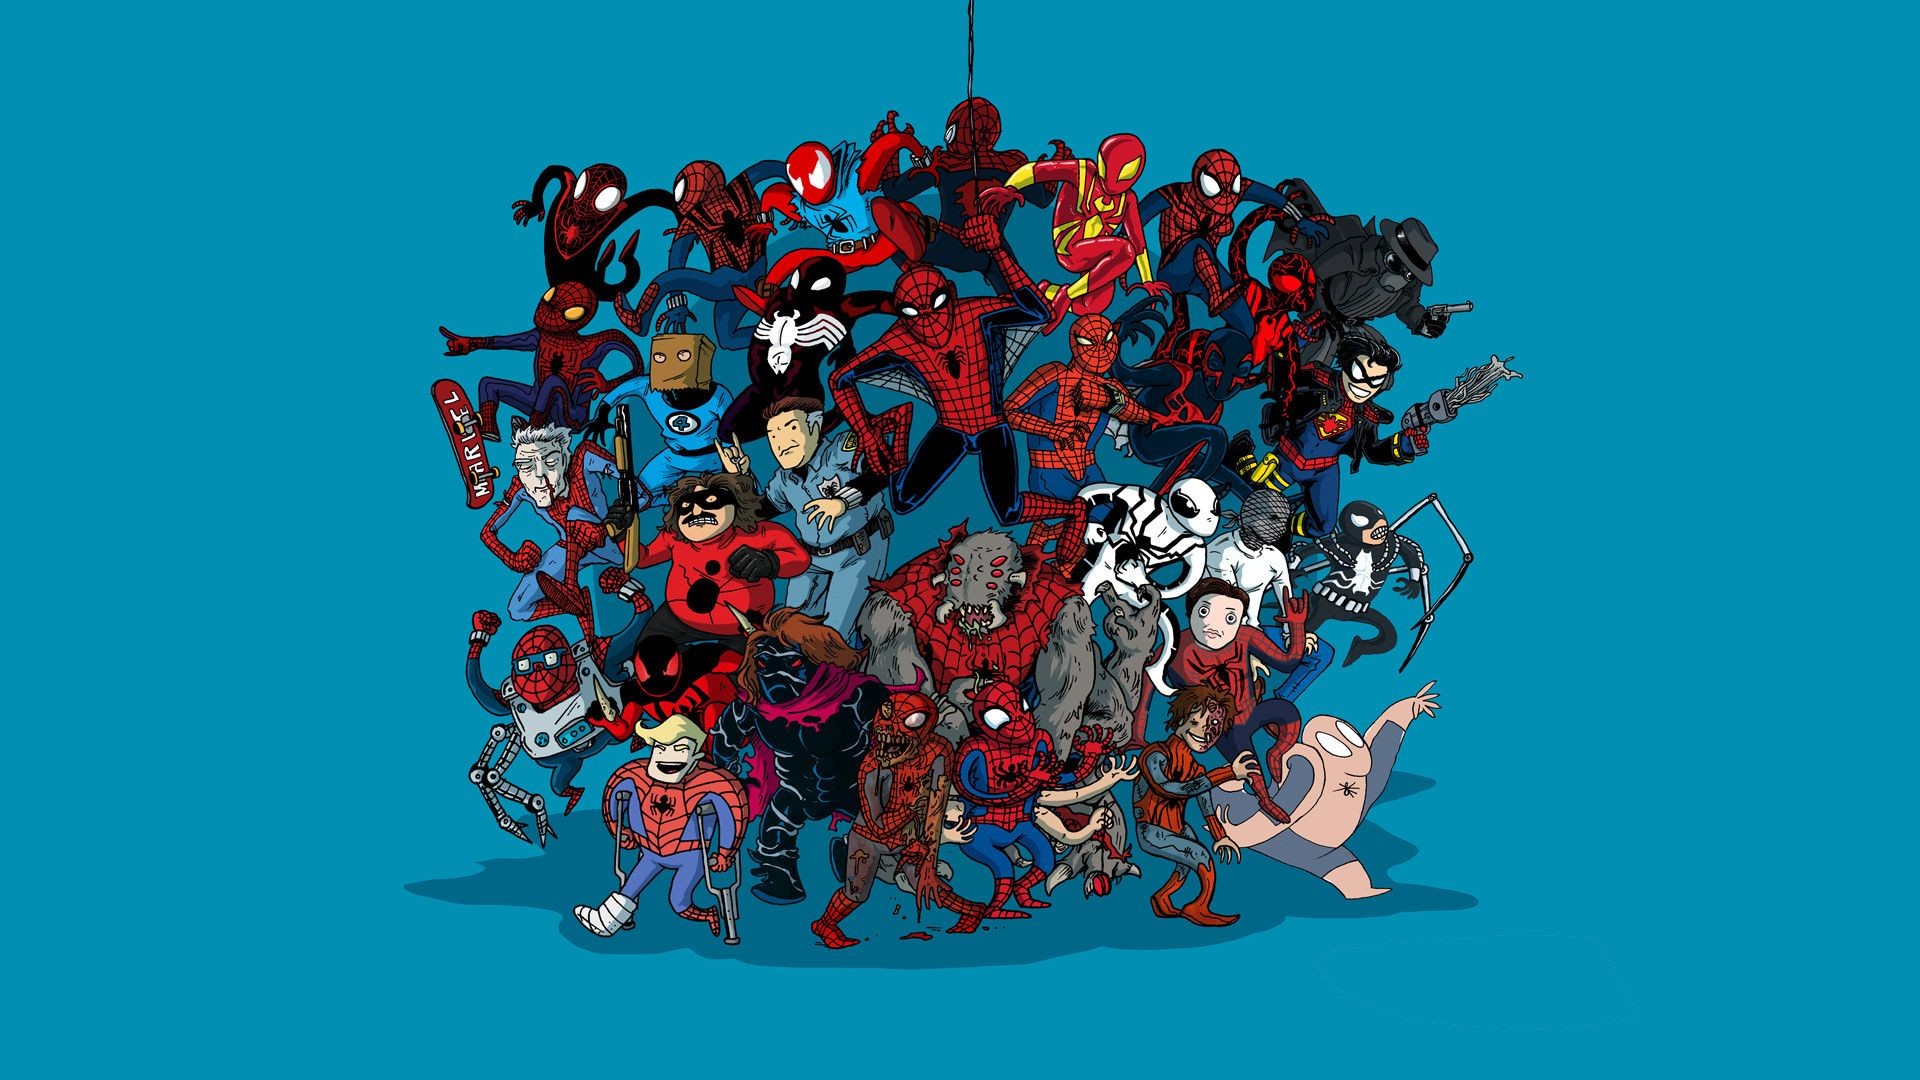 spiderman wallpaper hd descarga gratuita,personaje de ficción,dibujos animados,superhéroe,equipo,ficción